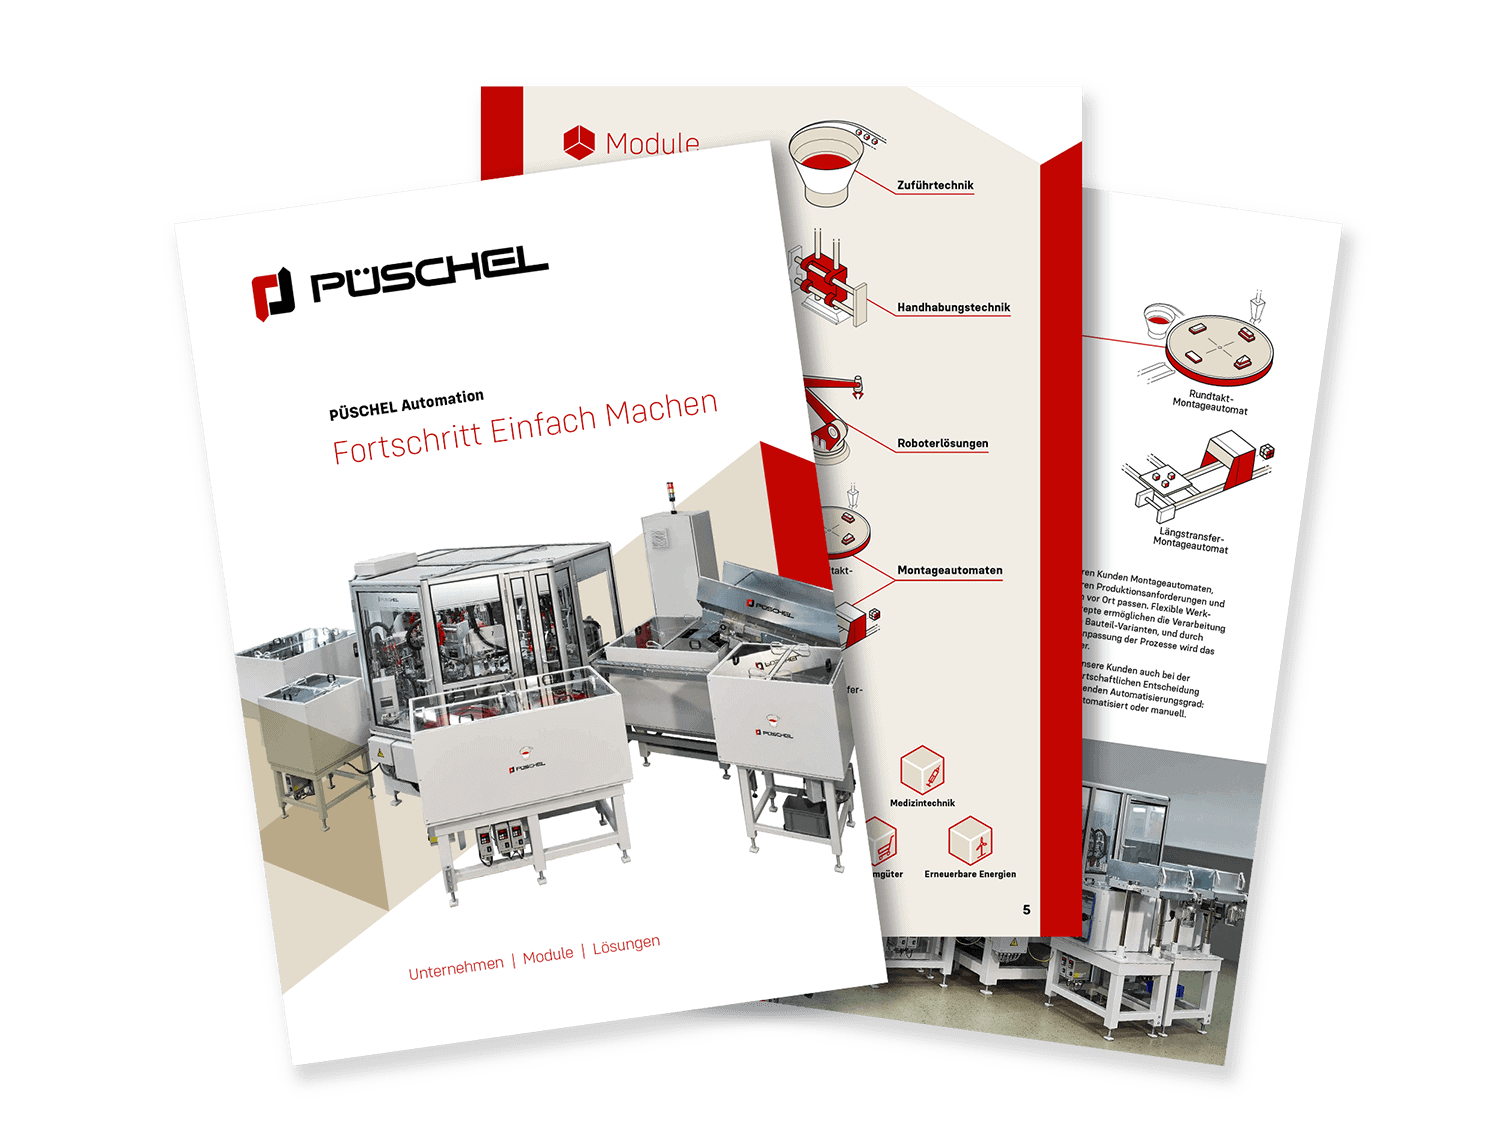 PÜSCHEL Automation - Image brochure